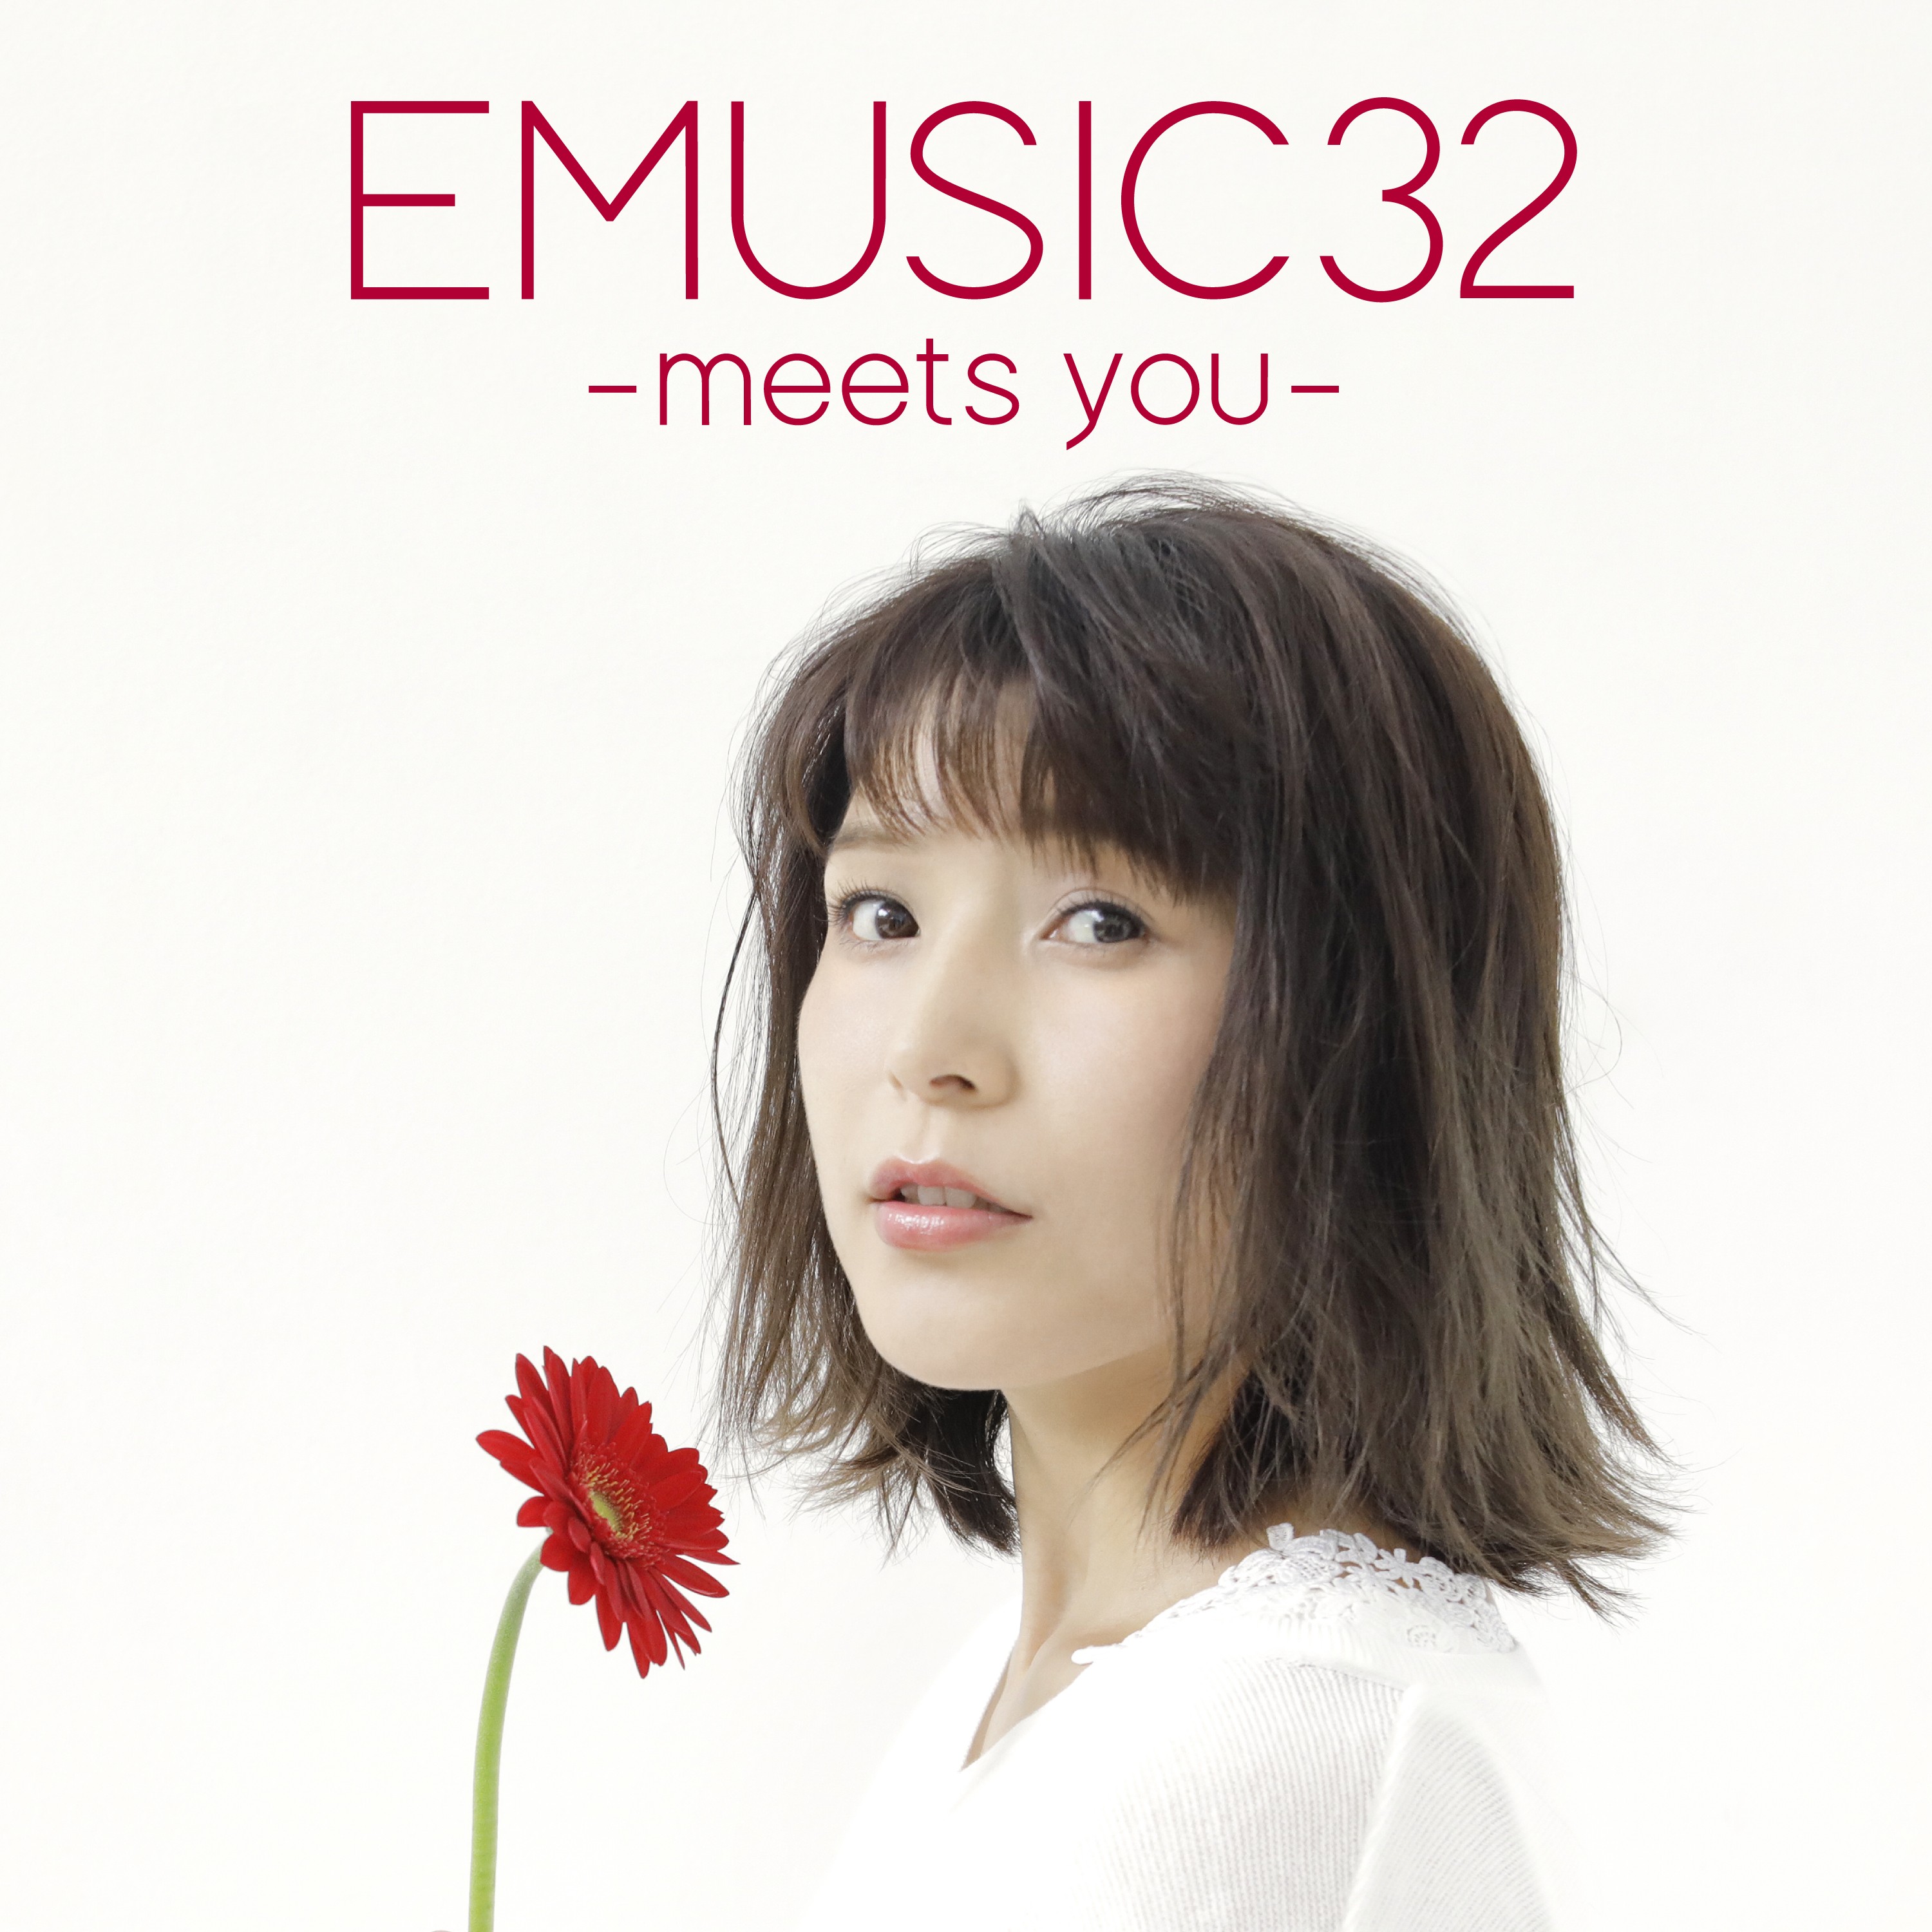 新田恵海 (Emi Nitta) - EMUSIC 32 -meets you- [FLAC 24bit/48kHz]